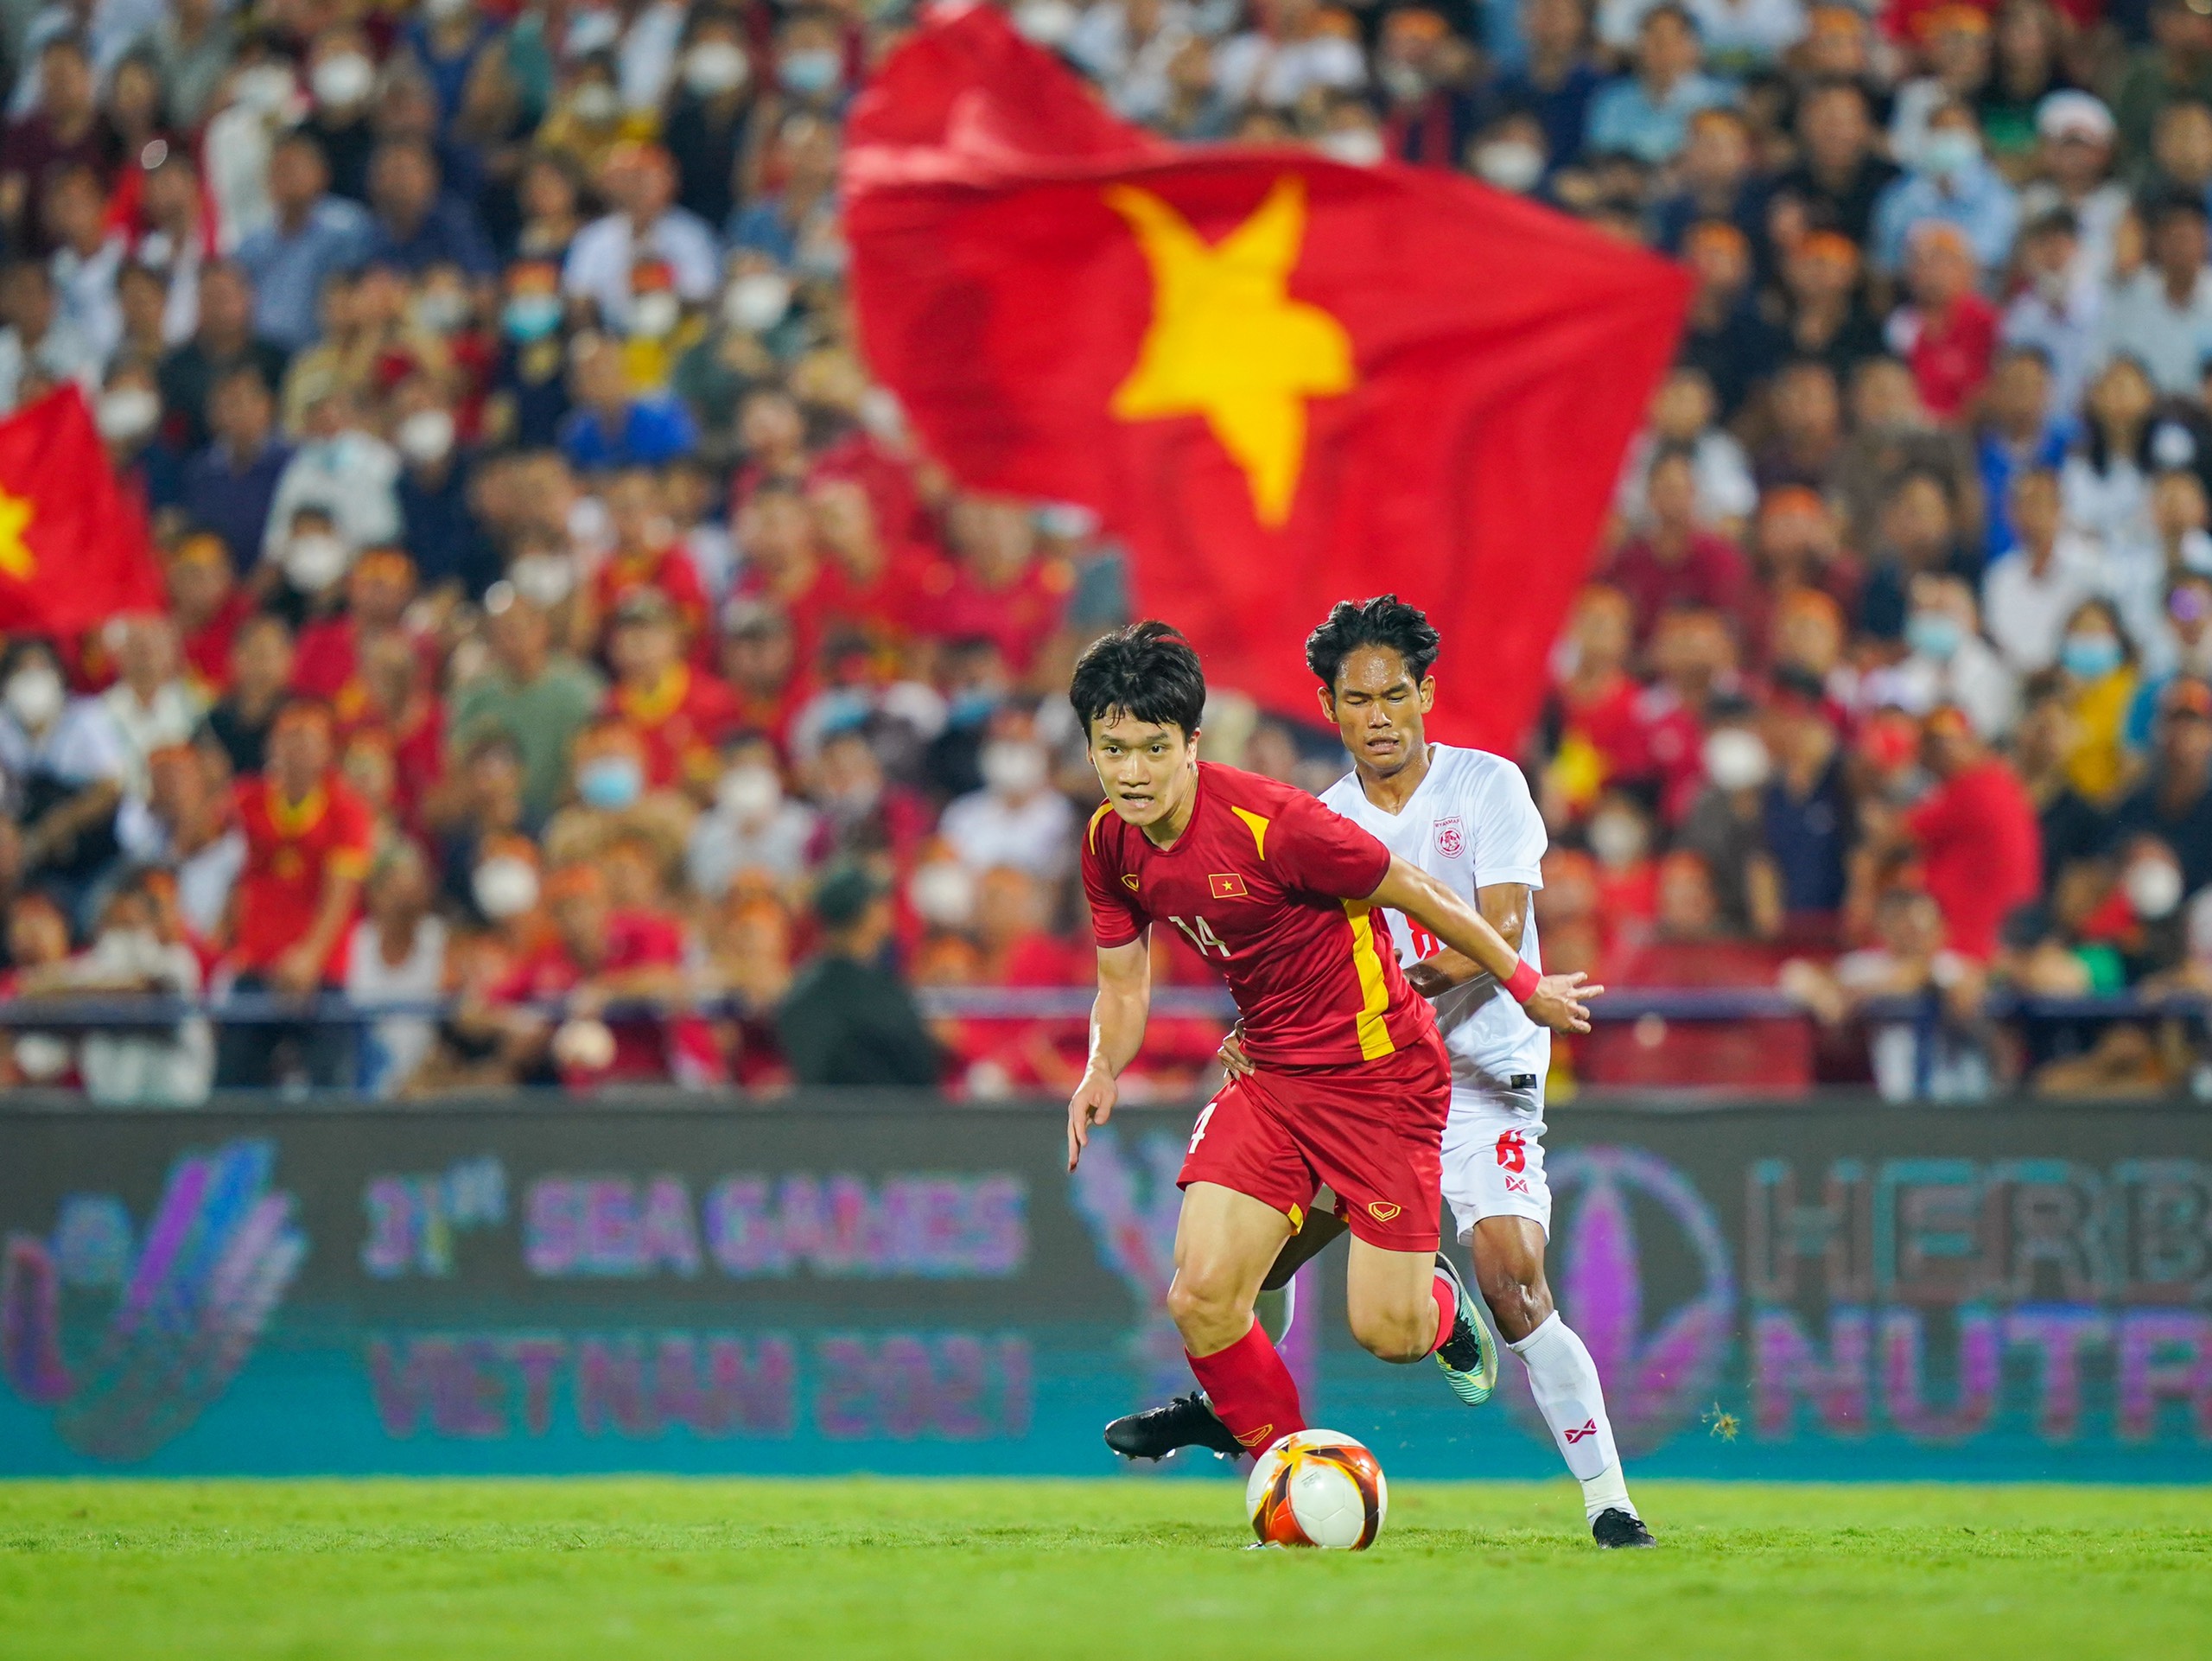 Dù kịch bản bán kết không tốt nhưng U23 Việt Nam vẫn đã để lại ấn tượng mạnh mẽ trong trận đấu với những pha bóng đầy kỹ năng và sự nỗ lực không ngừng nghỉ. Hãy xem hình ảnh để động viên đội tuyển sau trận đấu đầy cảm xúc này!